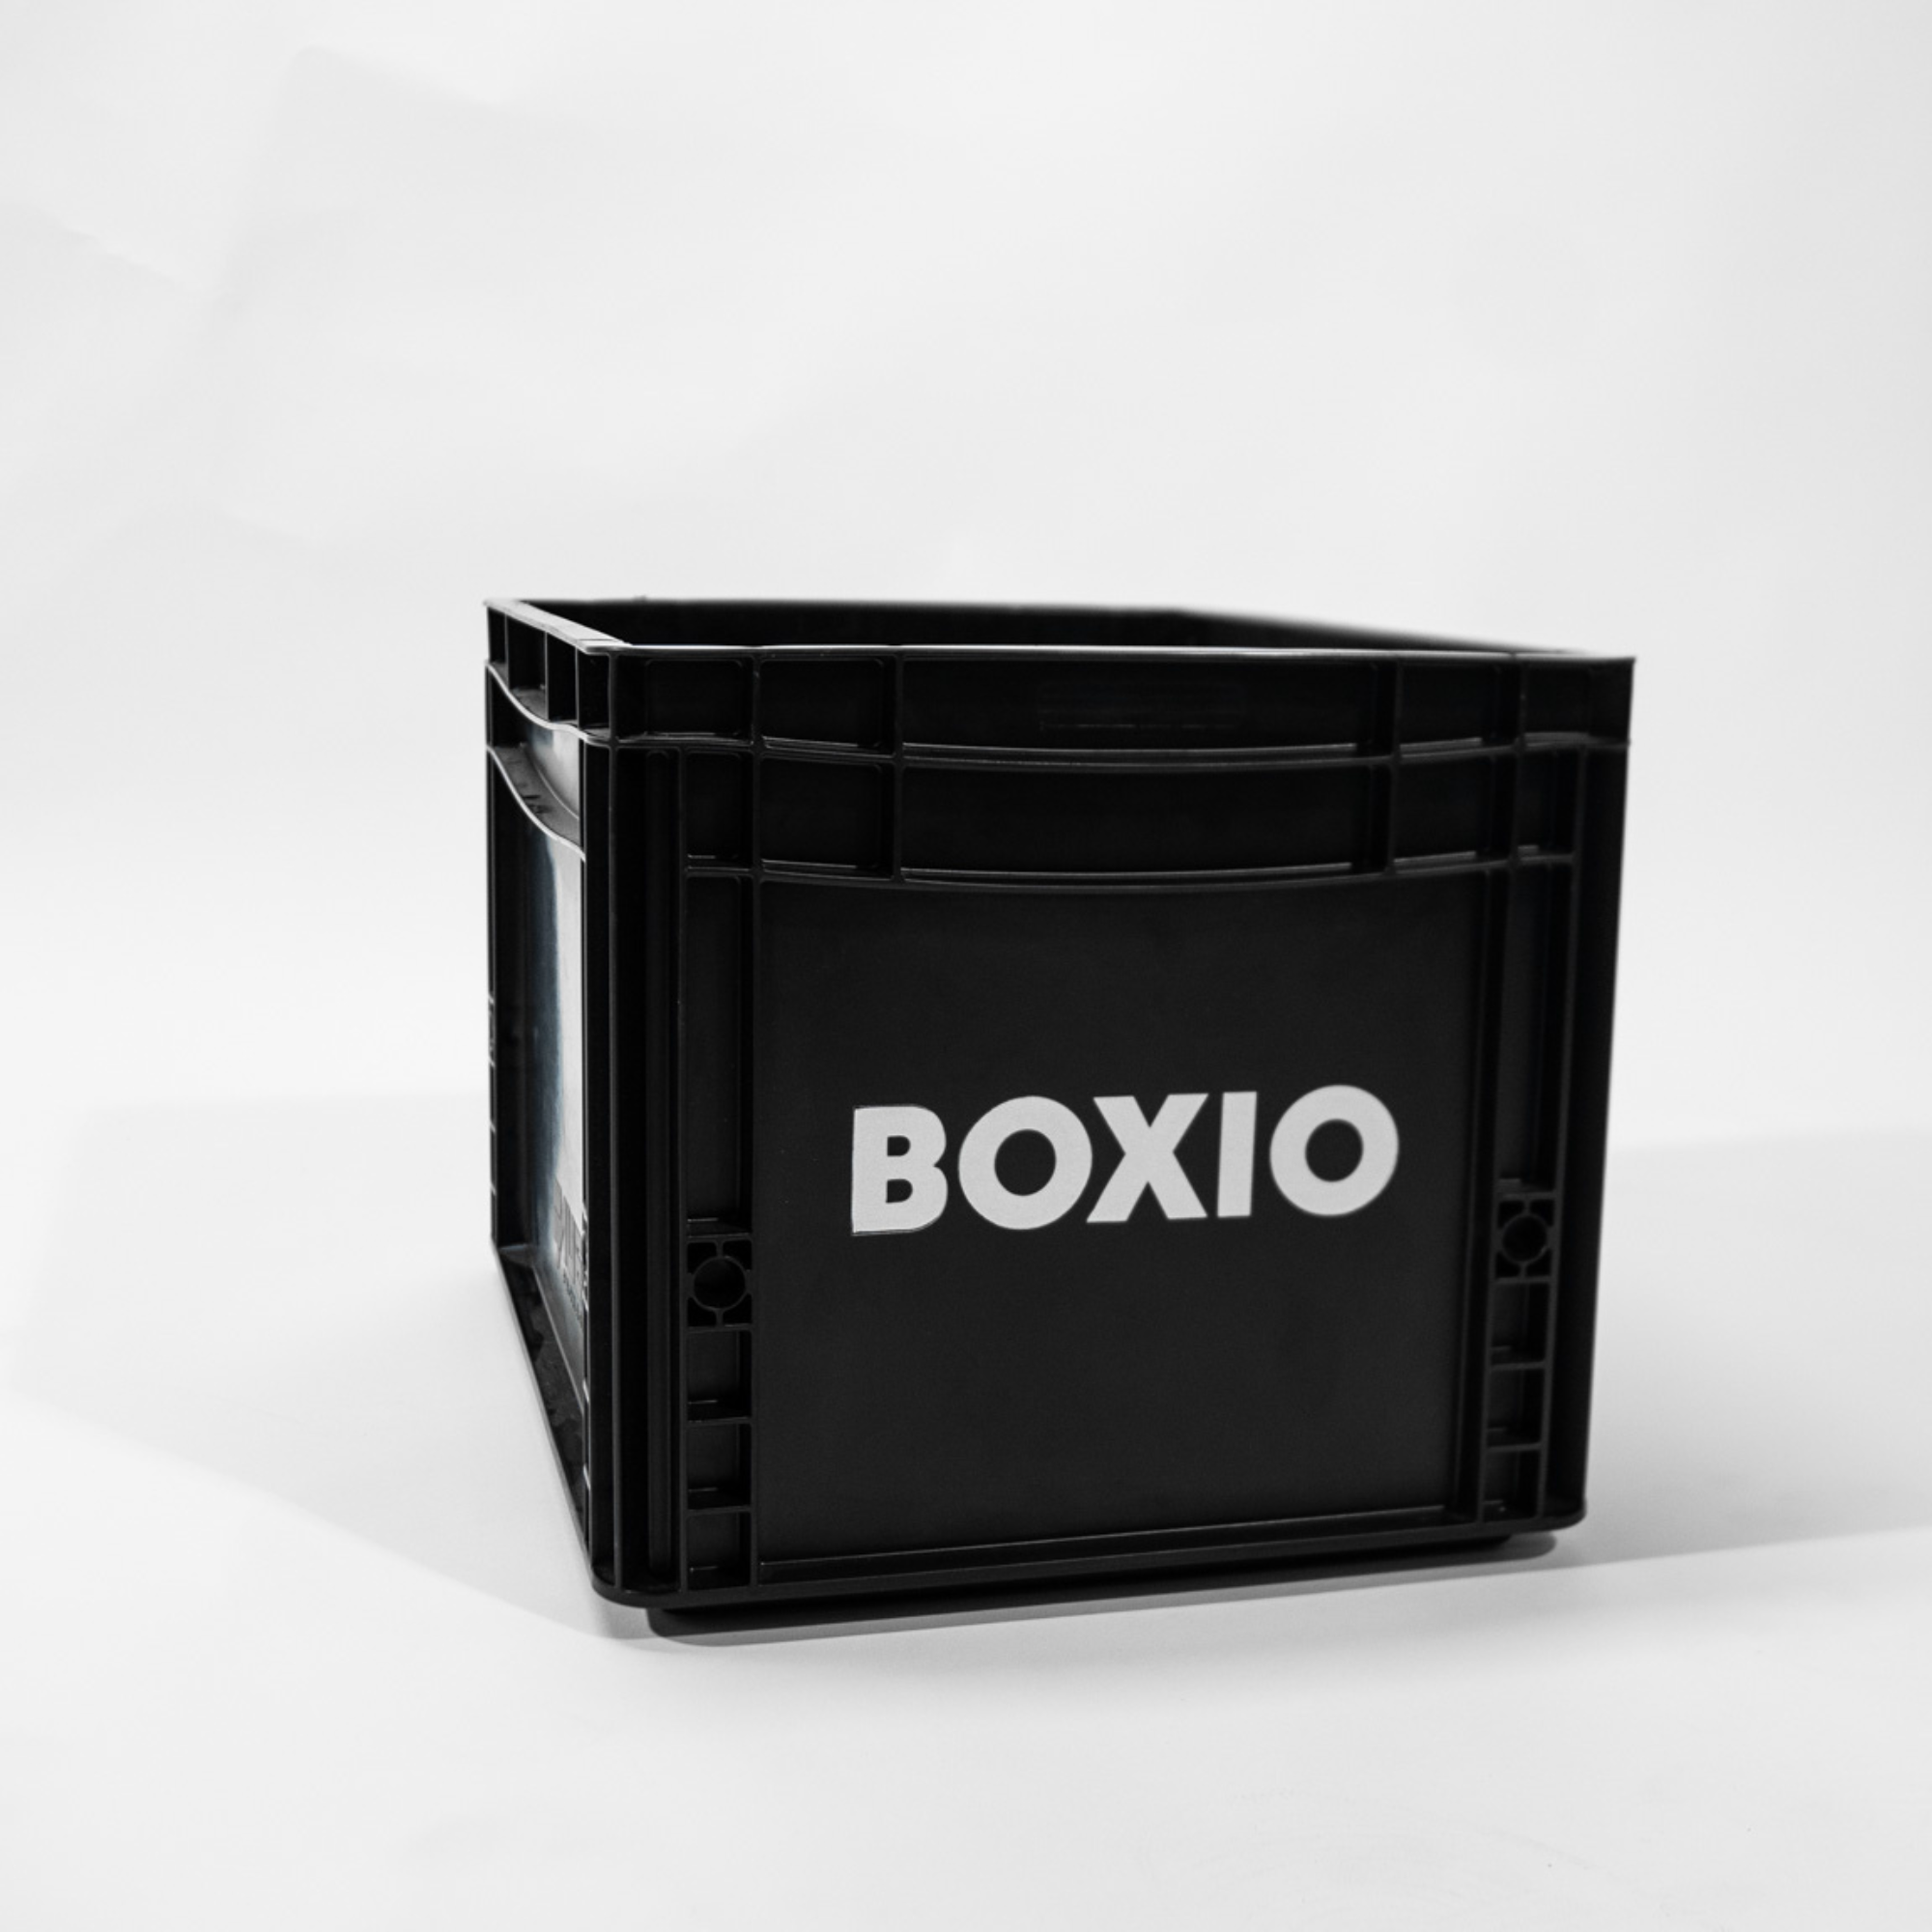 Eurobox "BOXIO" met boorgaten voor BOXIO - TOILET & WASH